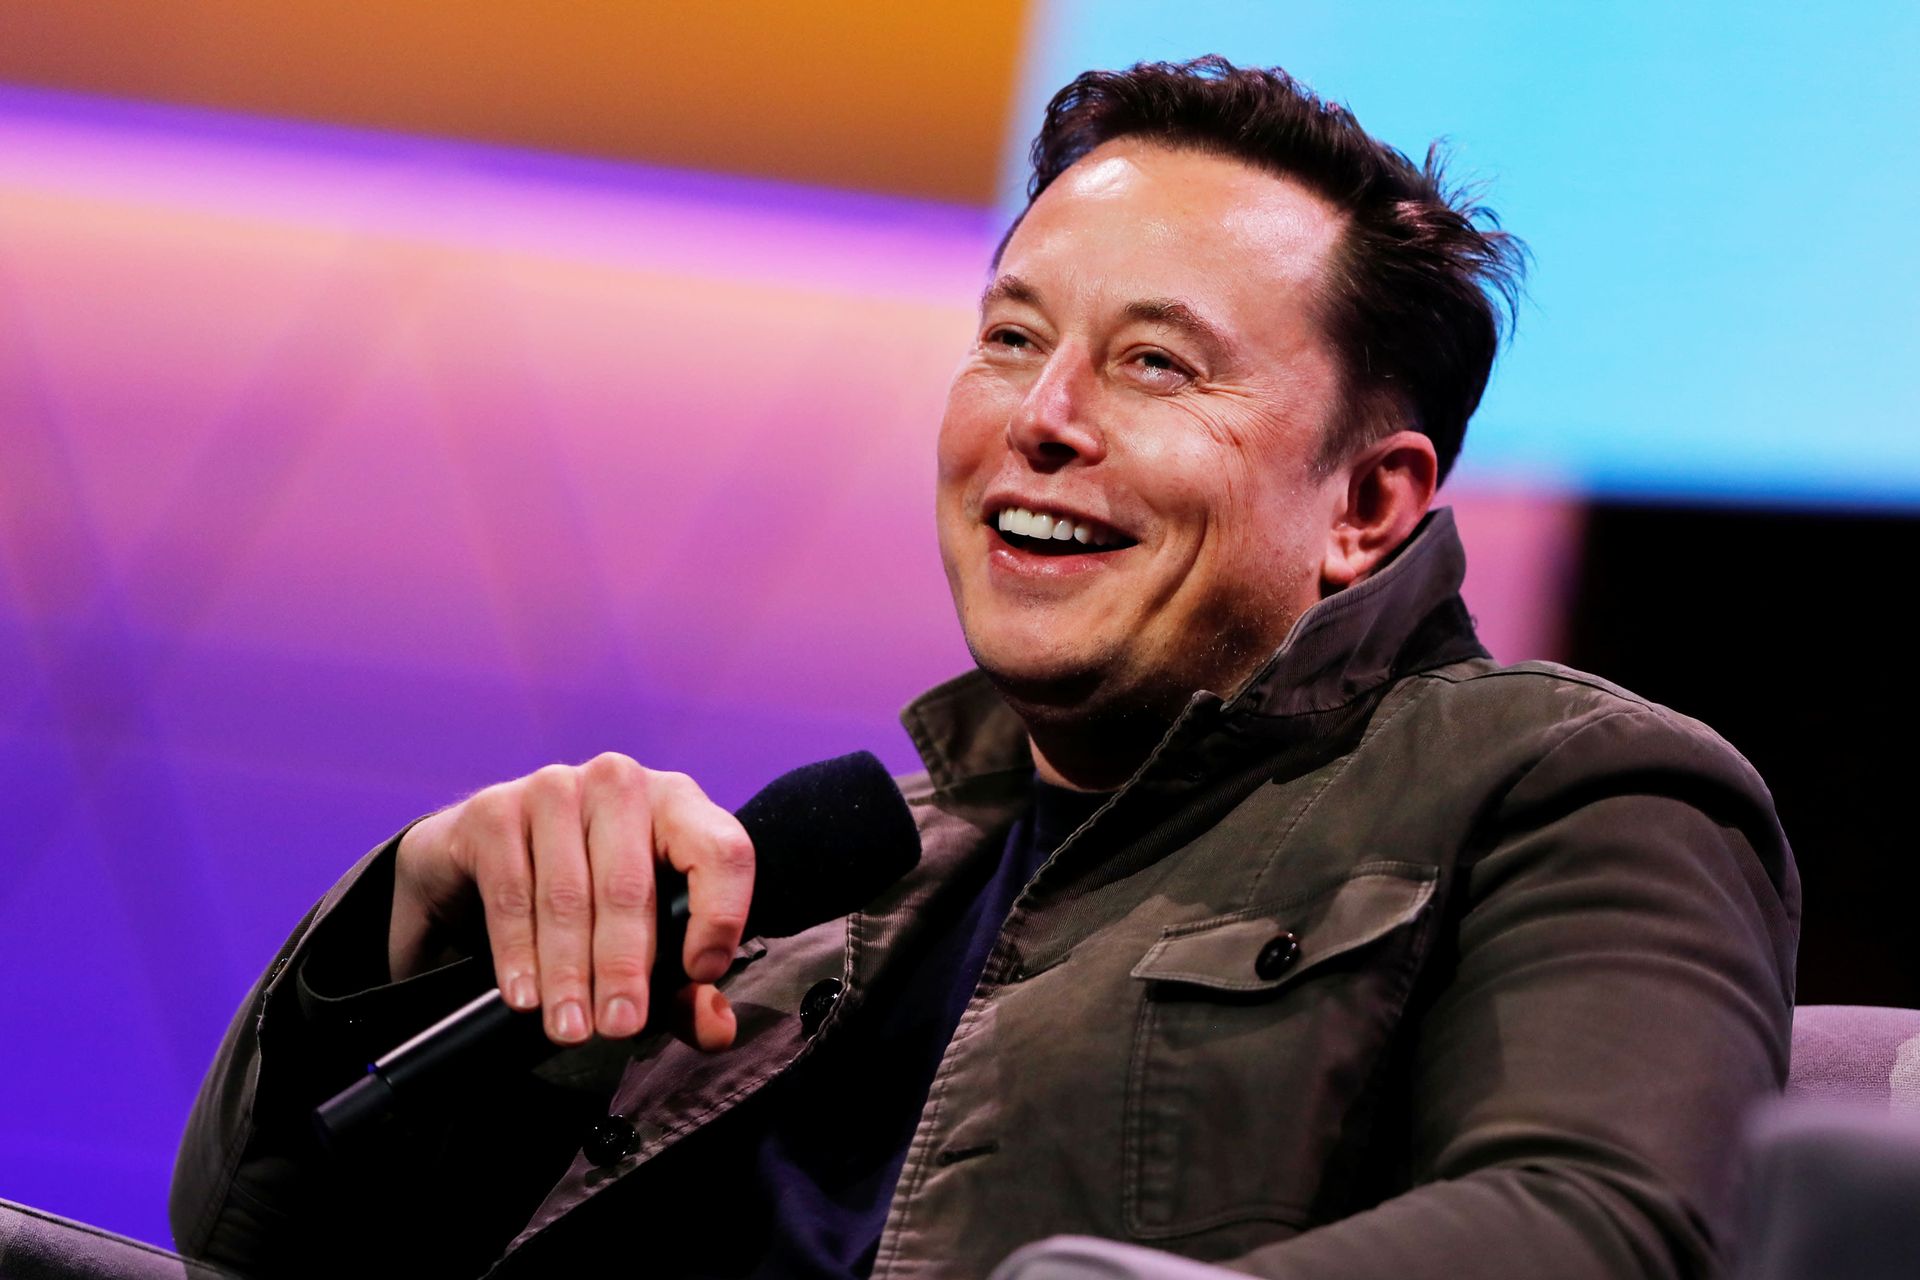 Bugün Elon Musk'ın doğum günü: Elon Musk nasıl zengin oldu?